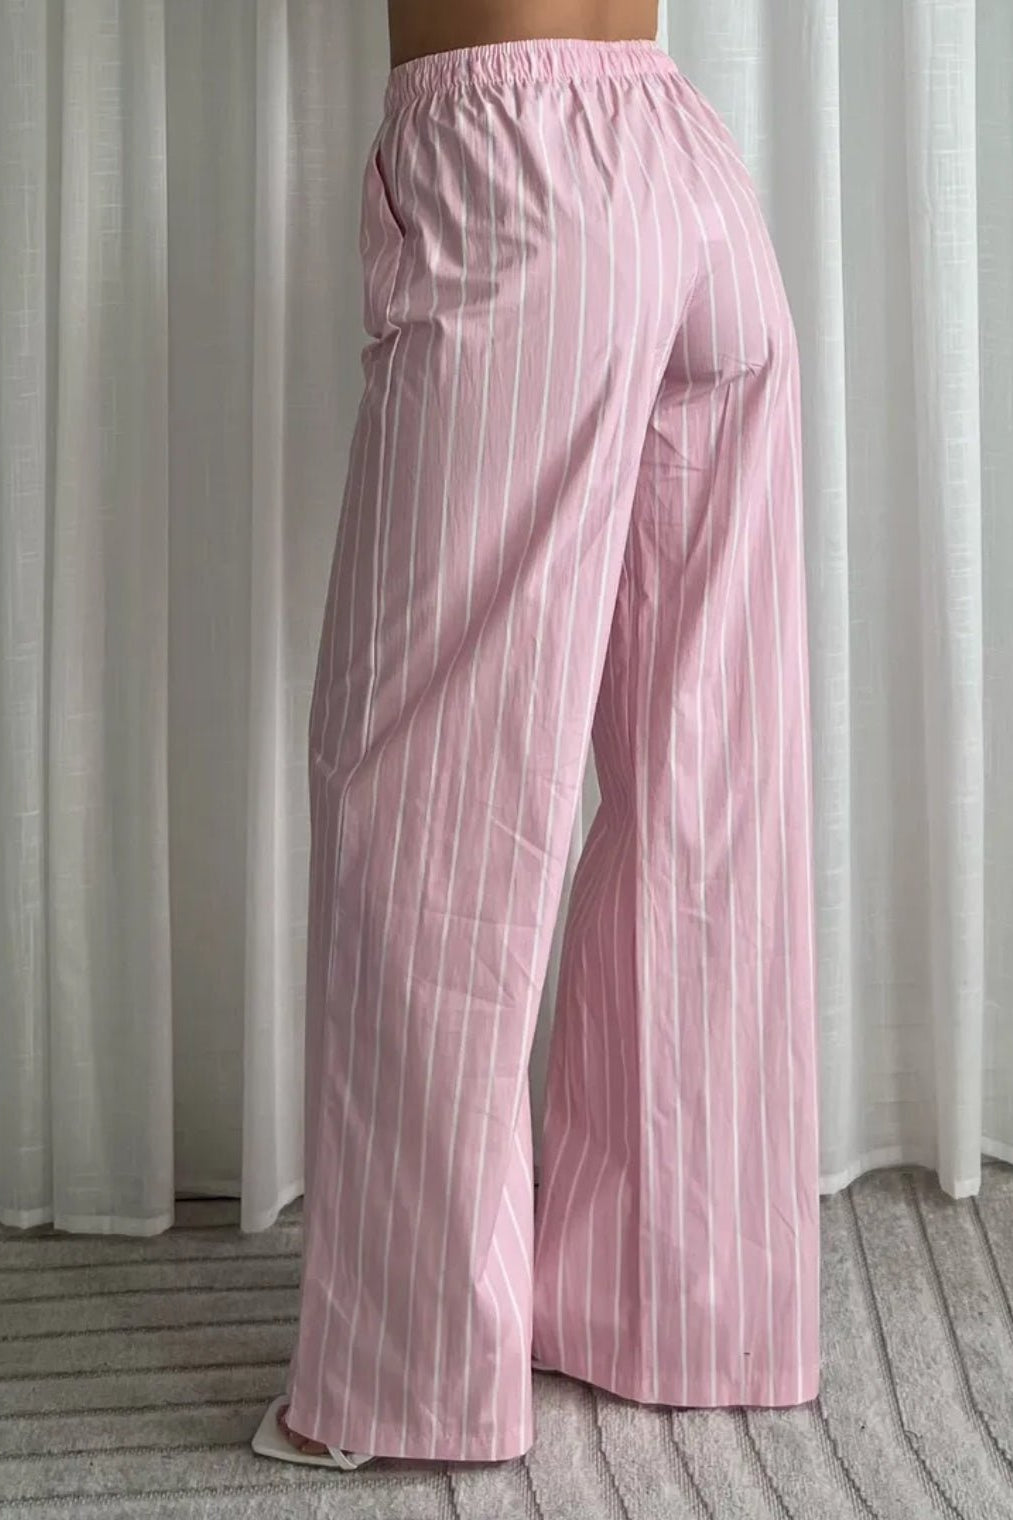 Striped Cotton Pants - 